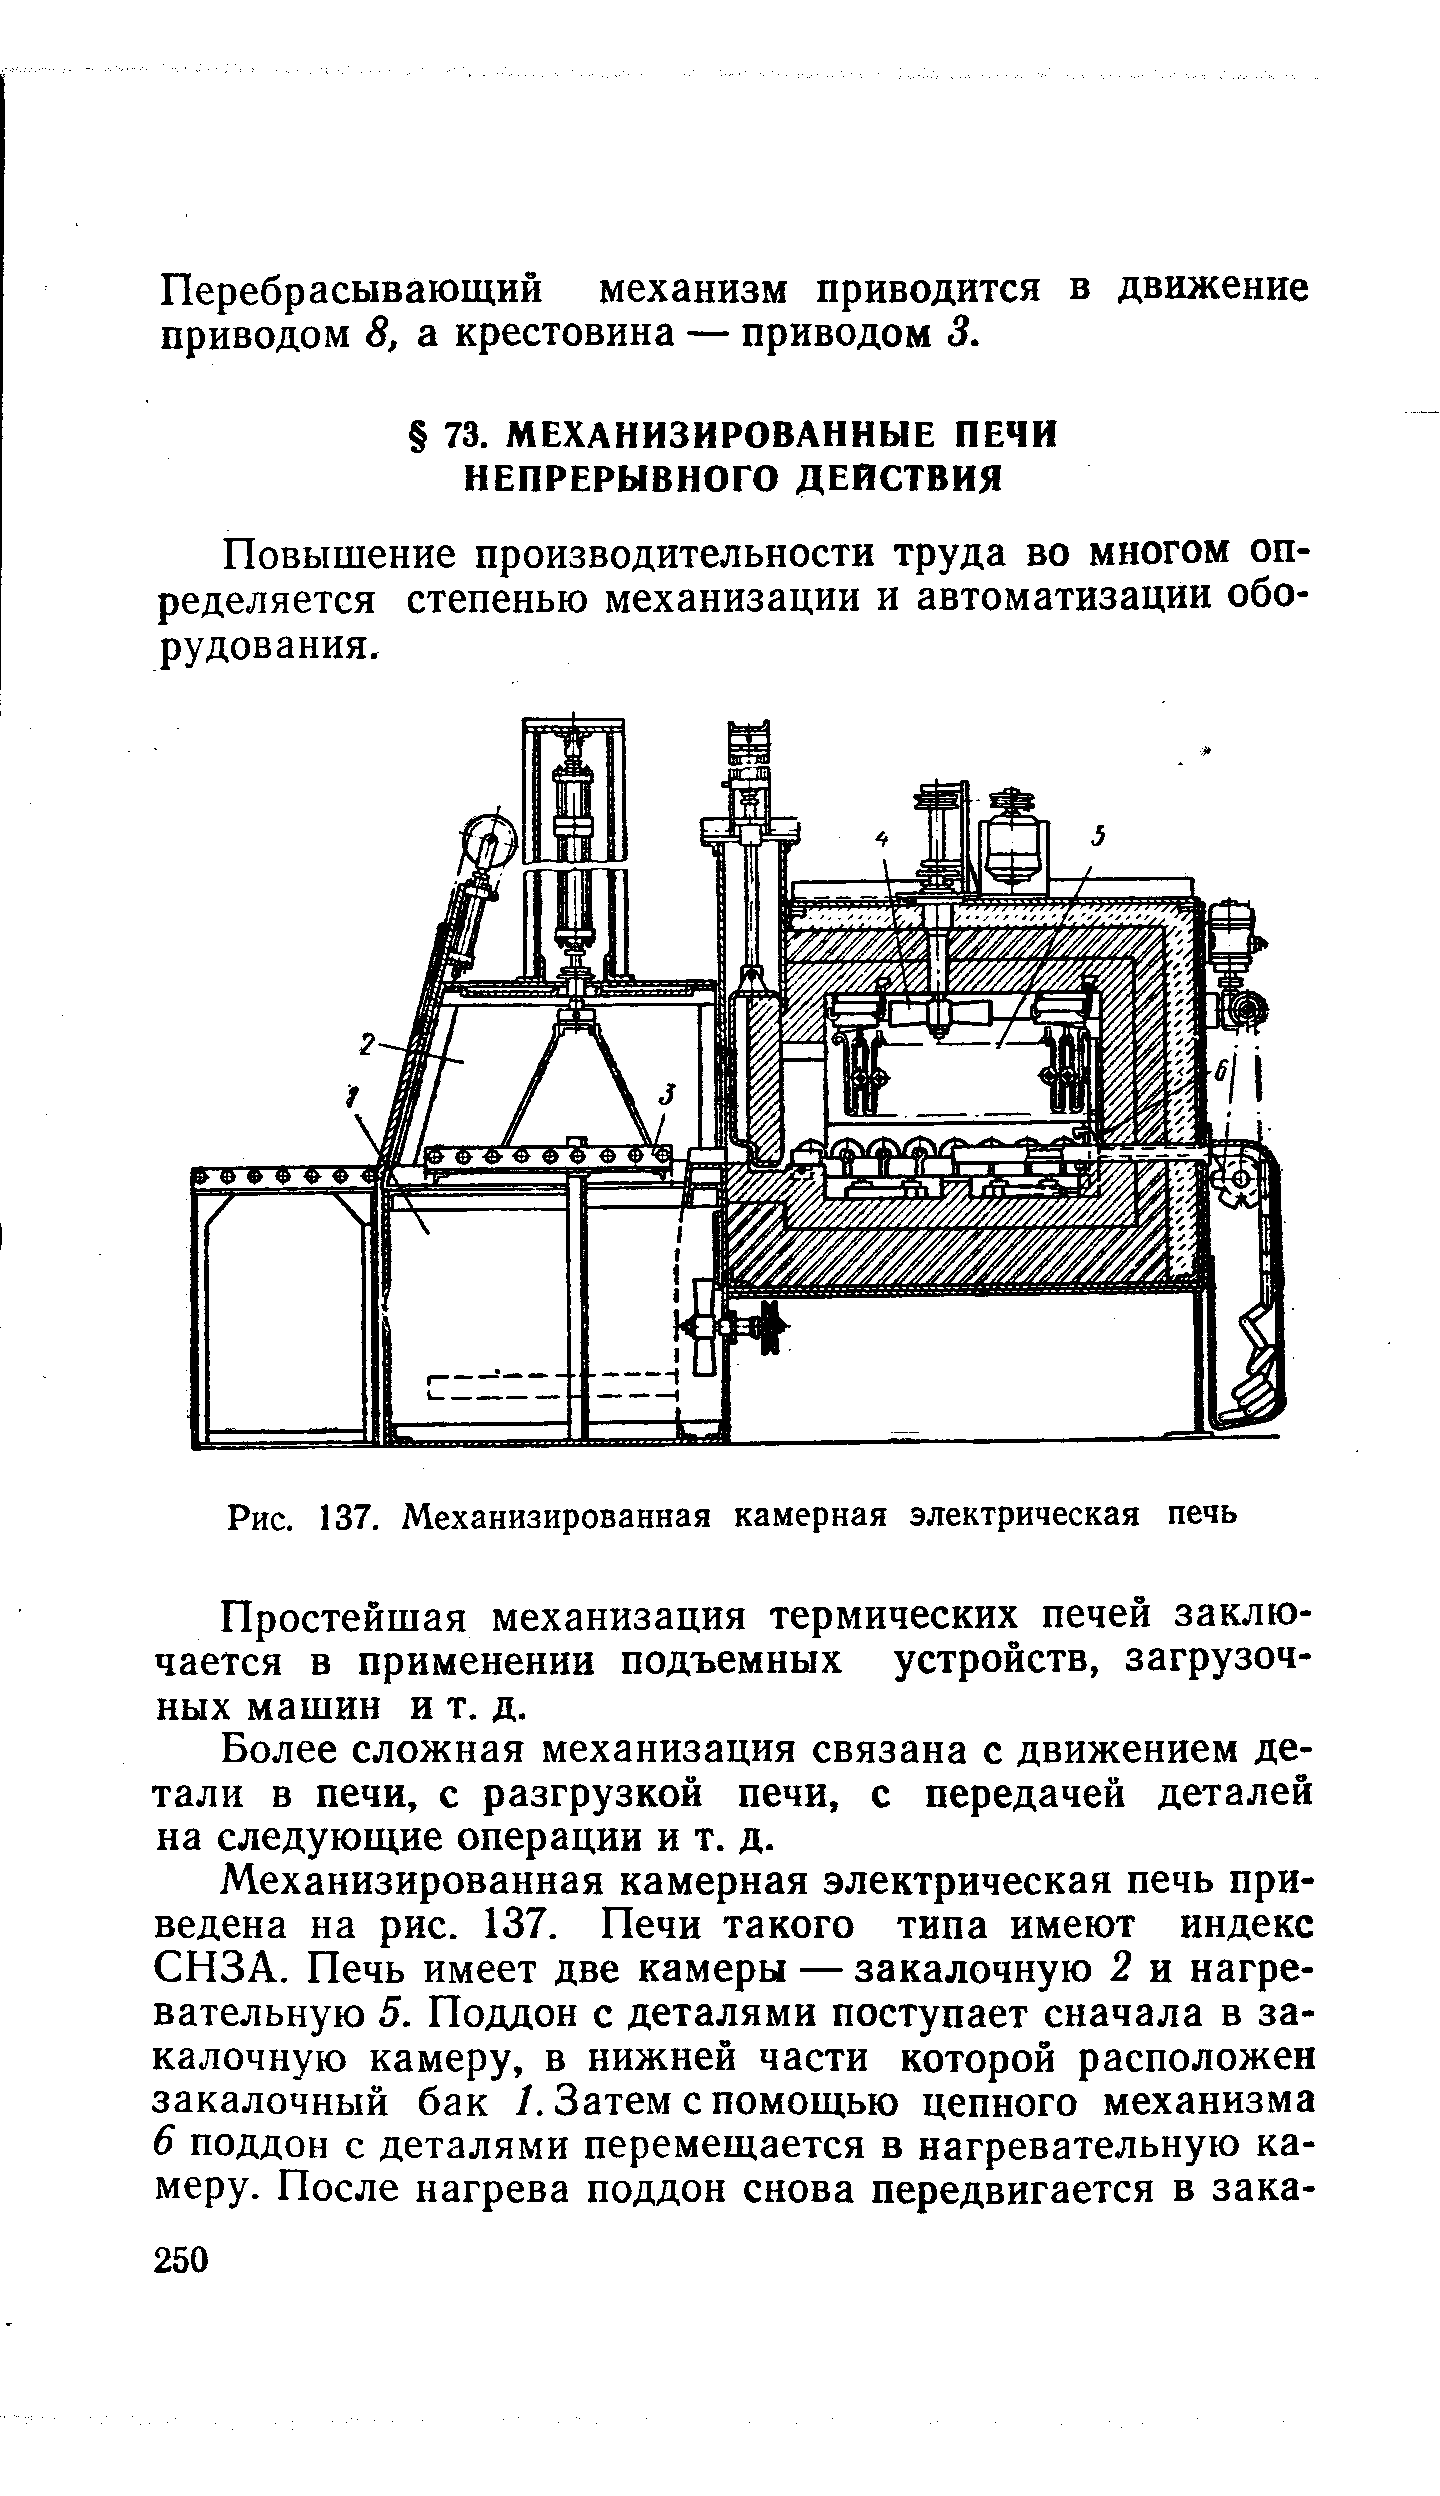 Рис. 137. Механизированная камерная электрическая печь
